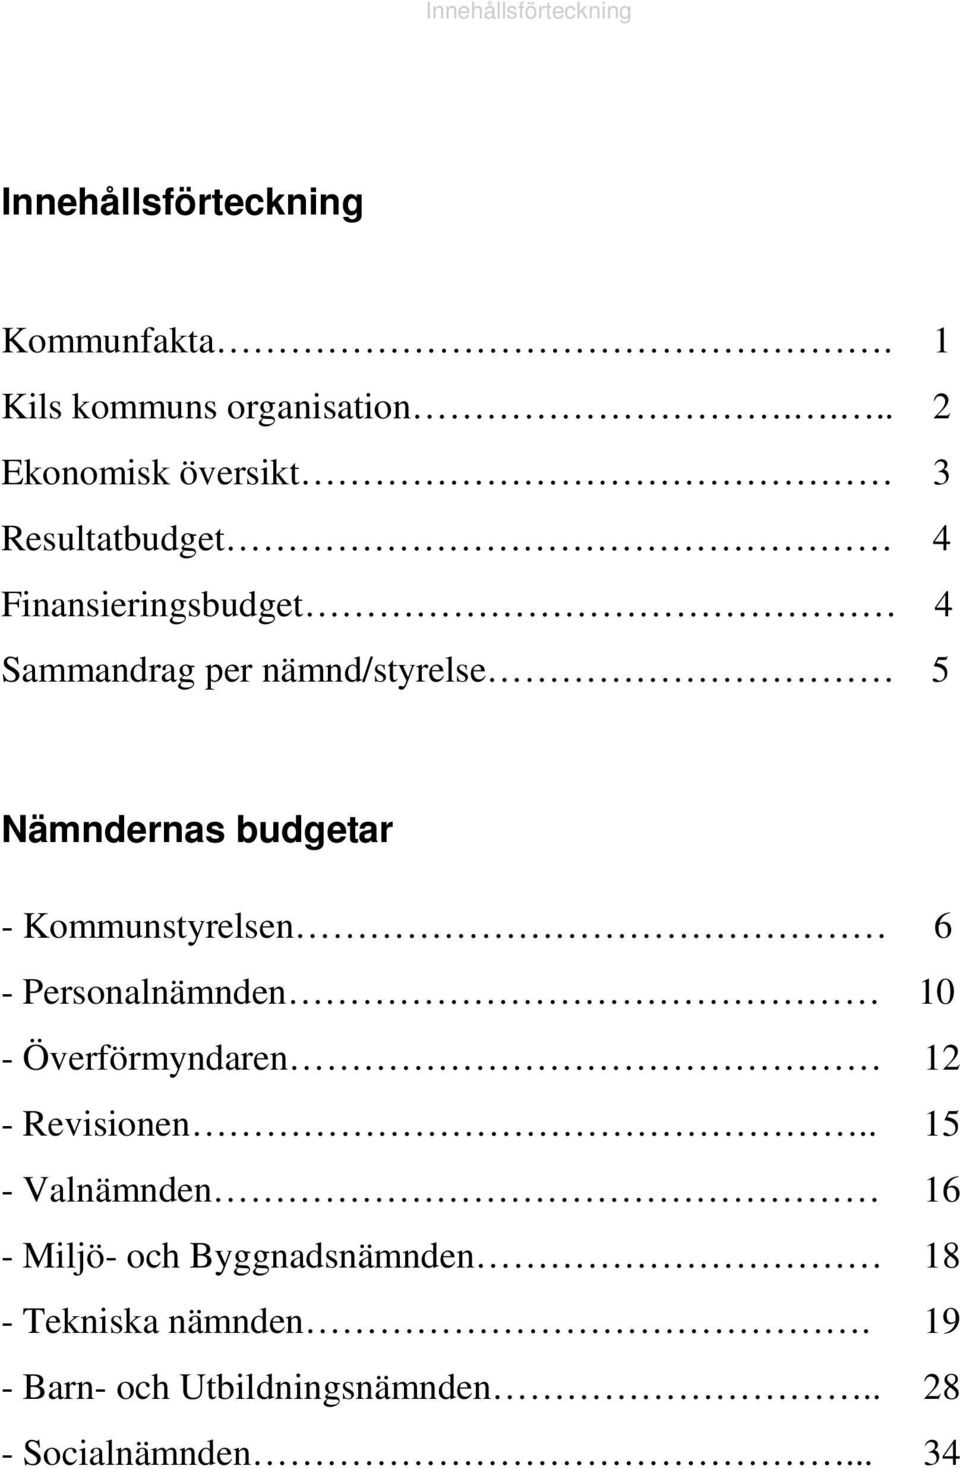 Nämndernas budgetar - Kommunstyrelsen 6 - Personalnämnden 10 - Överförmyndaren 12 - Revisionen.